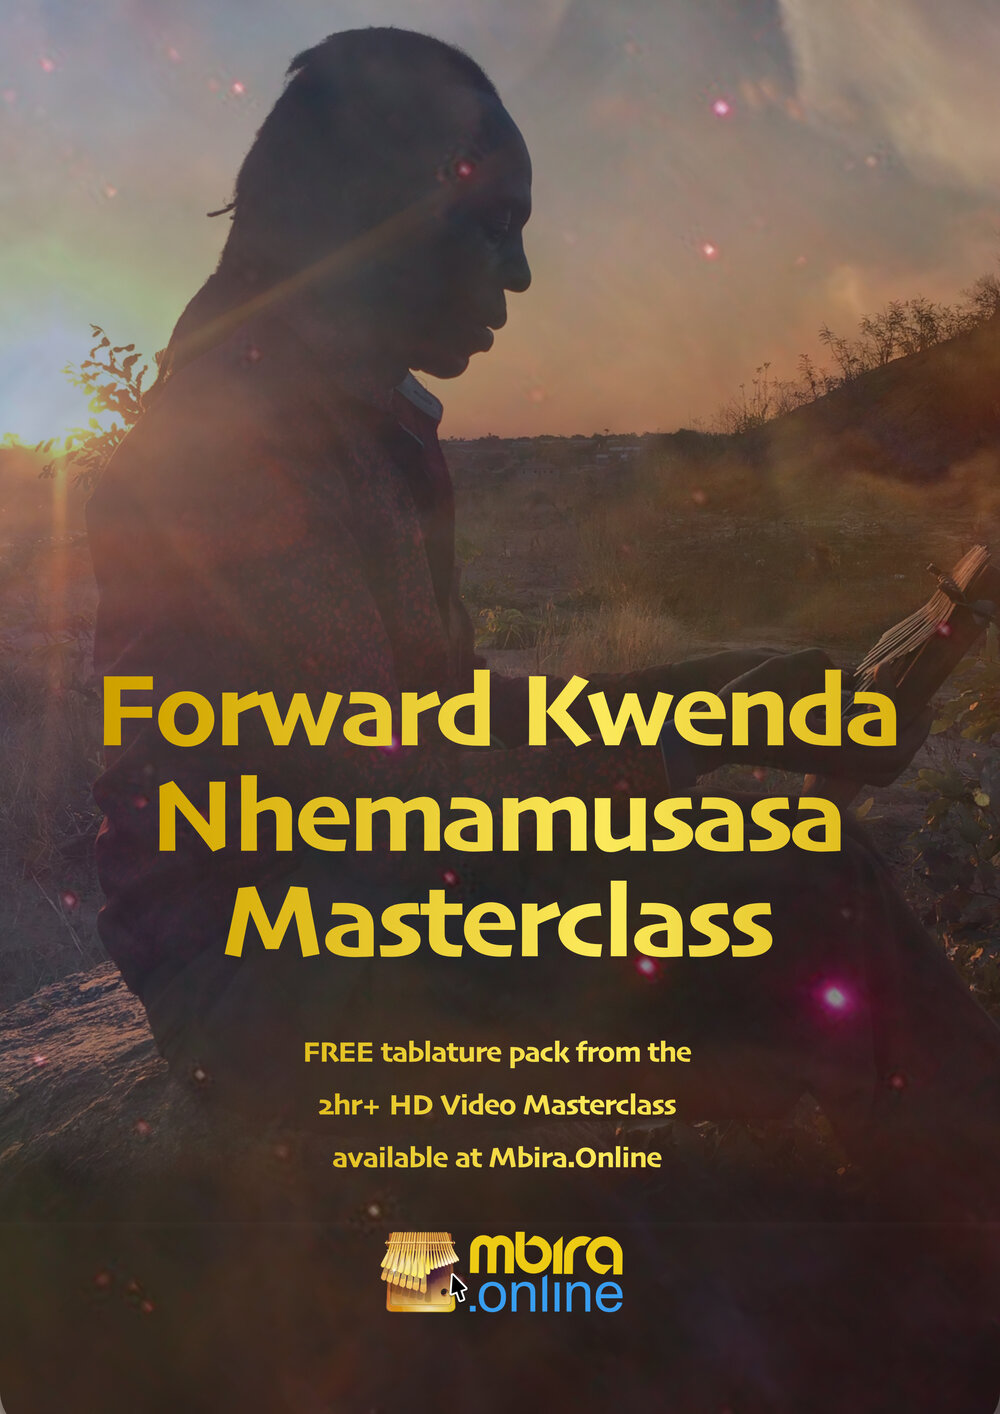 3rd : Forward Kwenda - FREE Nhemamusasa Masterclass 